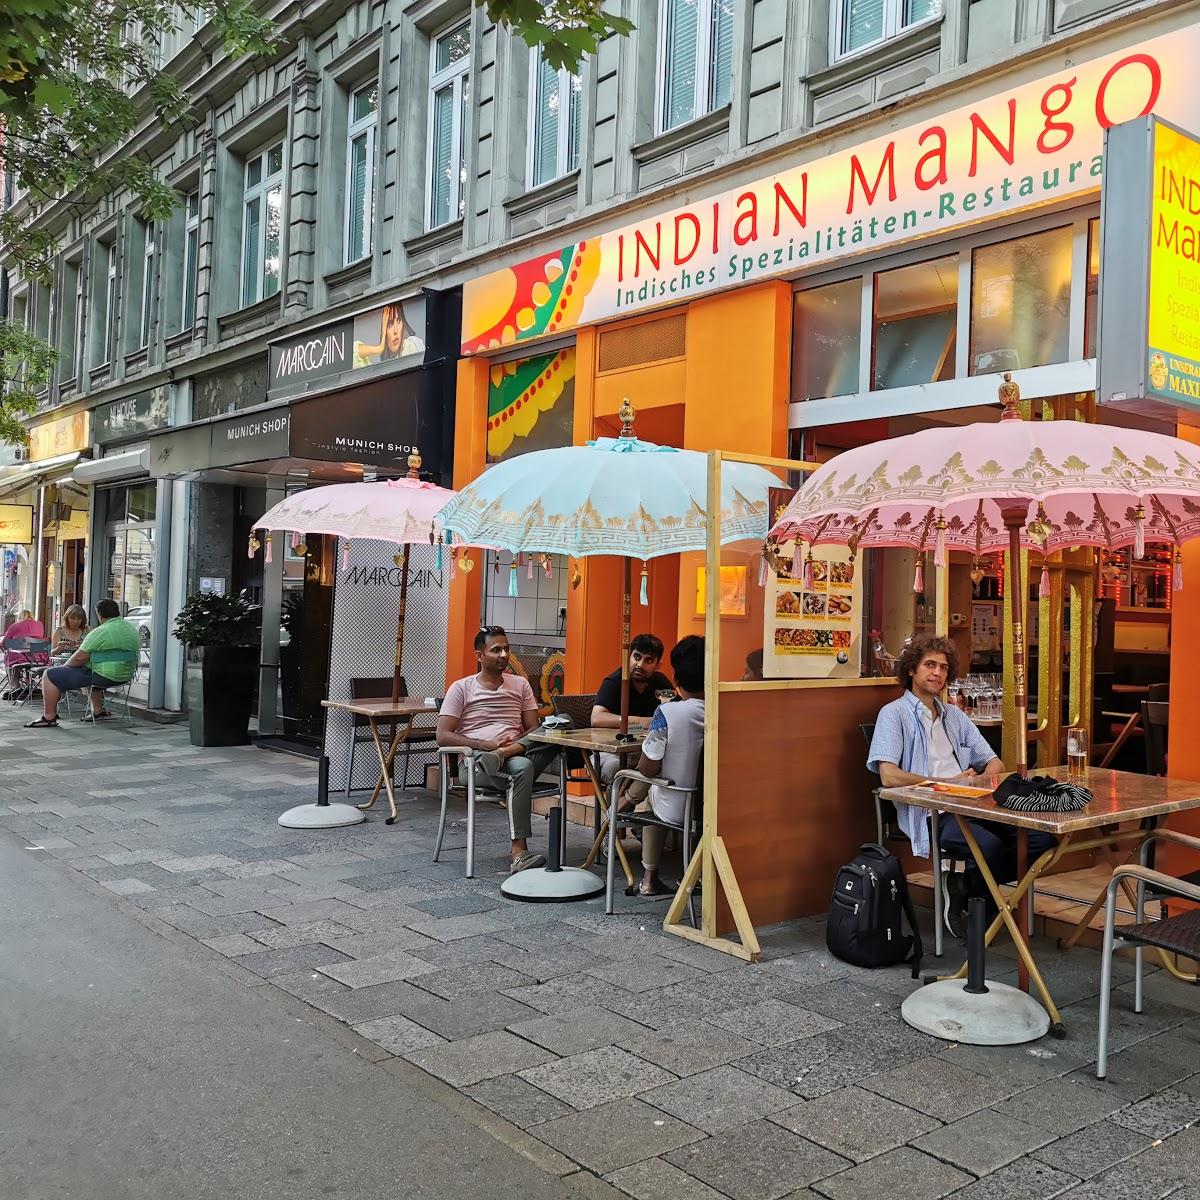 Restaurant "Indian Mango" in München